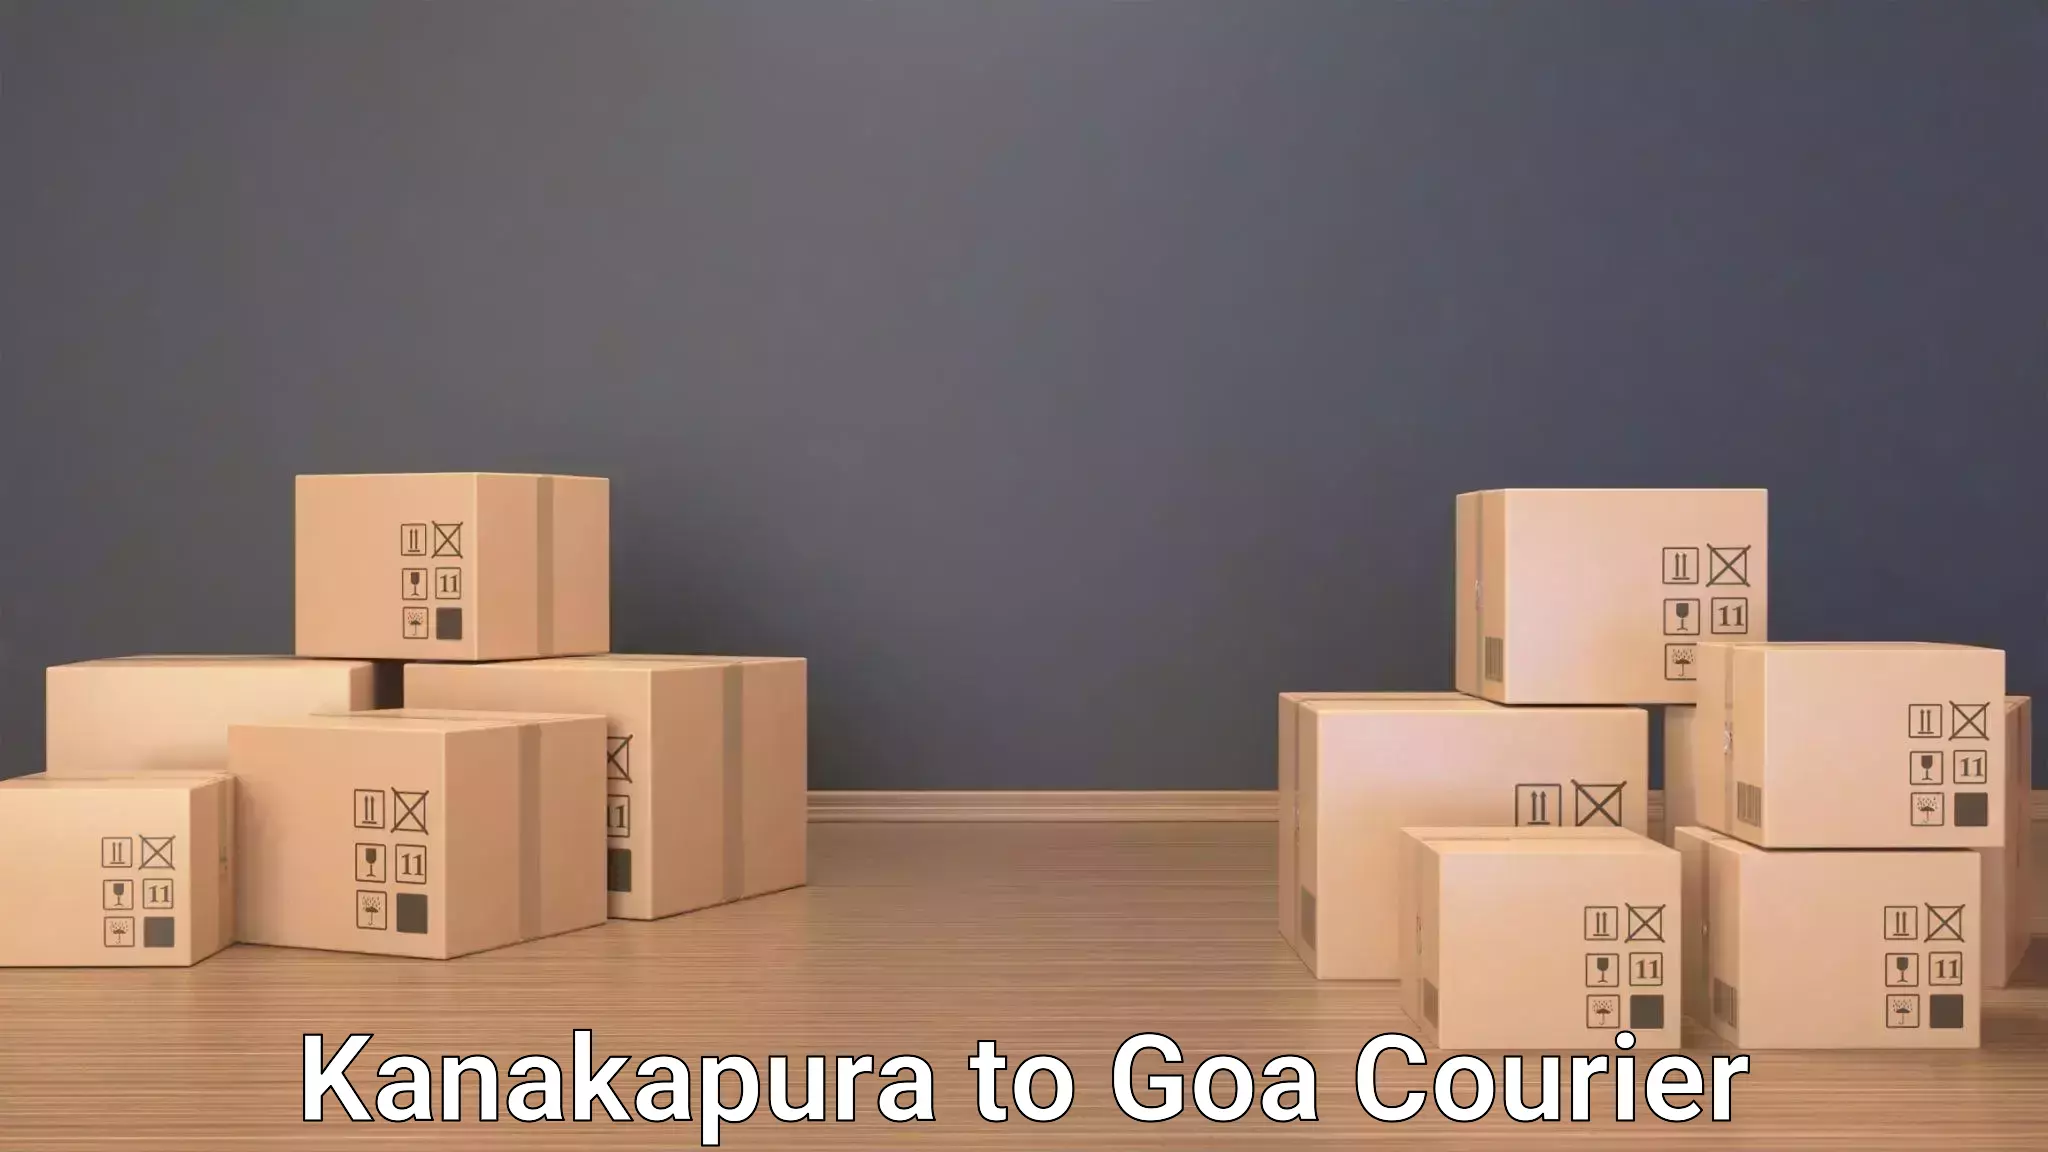 Luggage shipping service Kanakapura to Goa